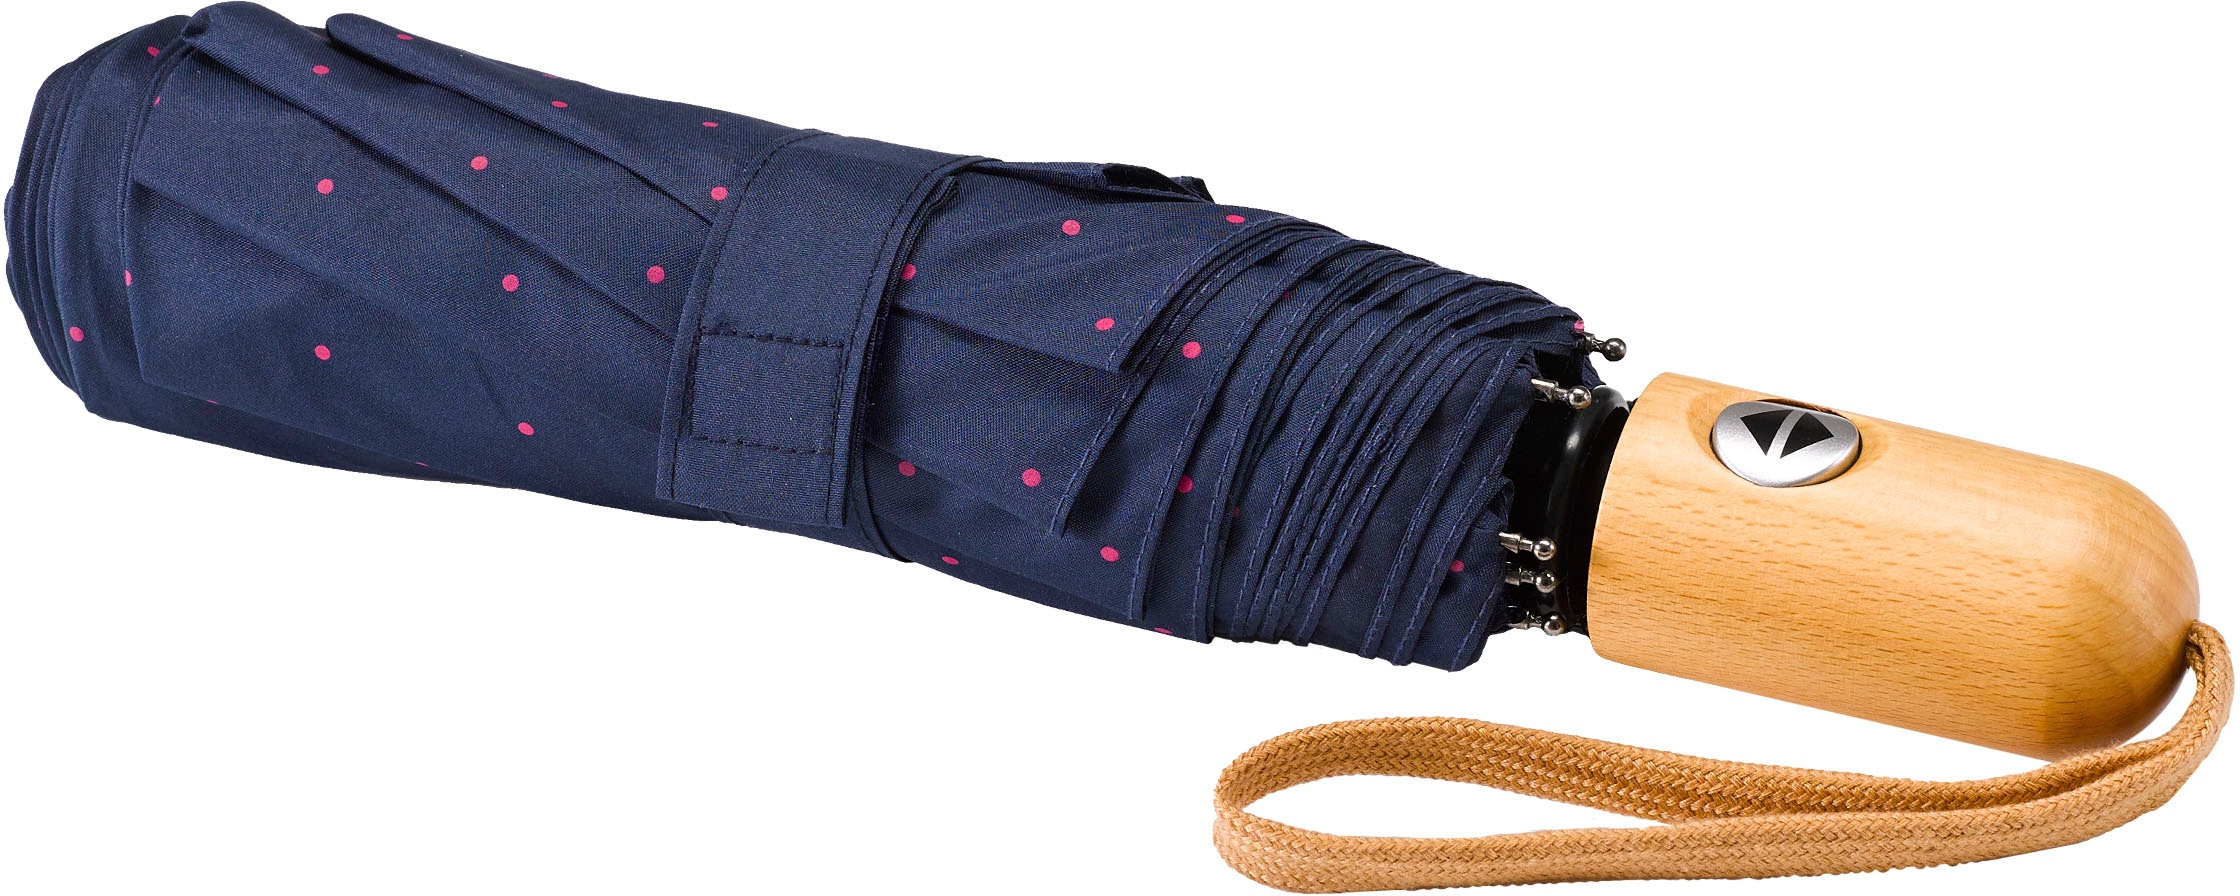 Punkte marine, »Umwelt-Taschenschirm, kaufen EuroSCHIRM® pink« Taschenregenschirm